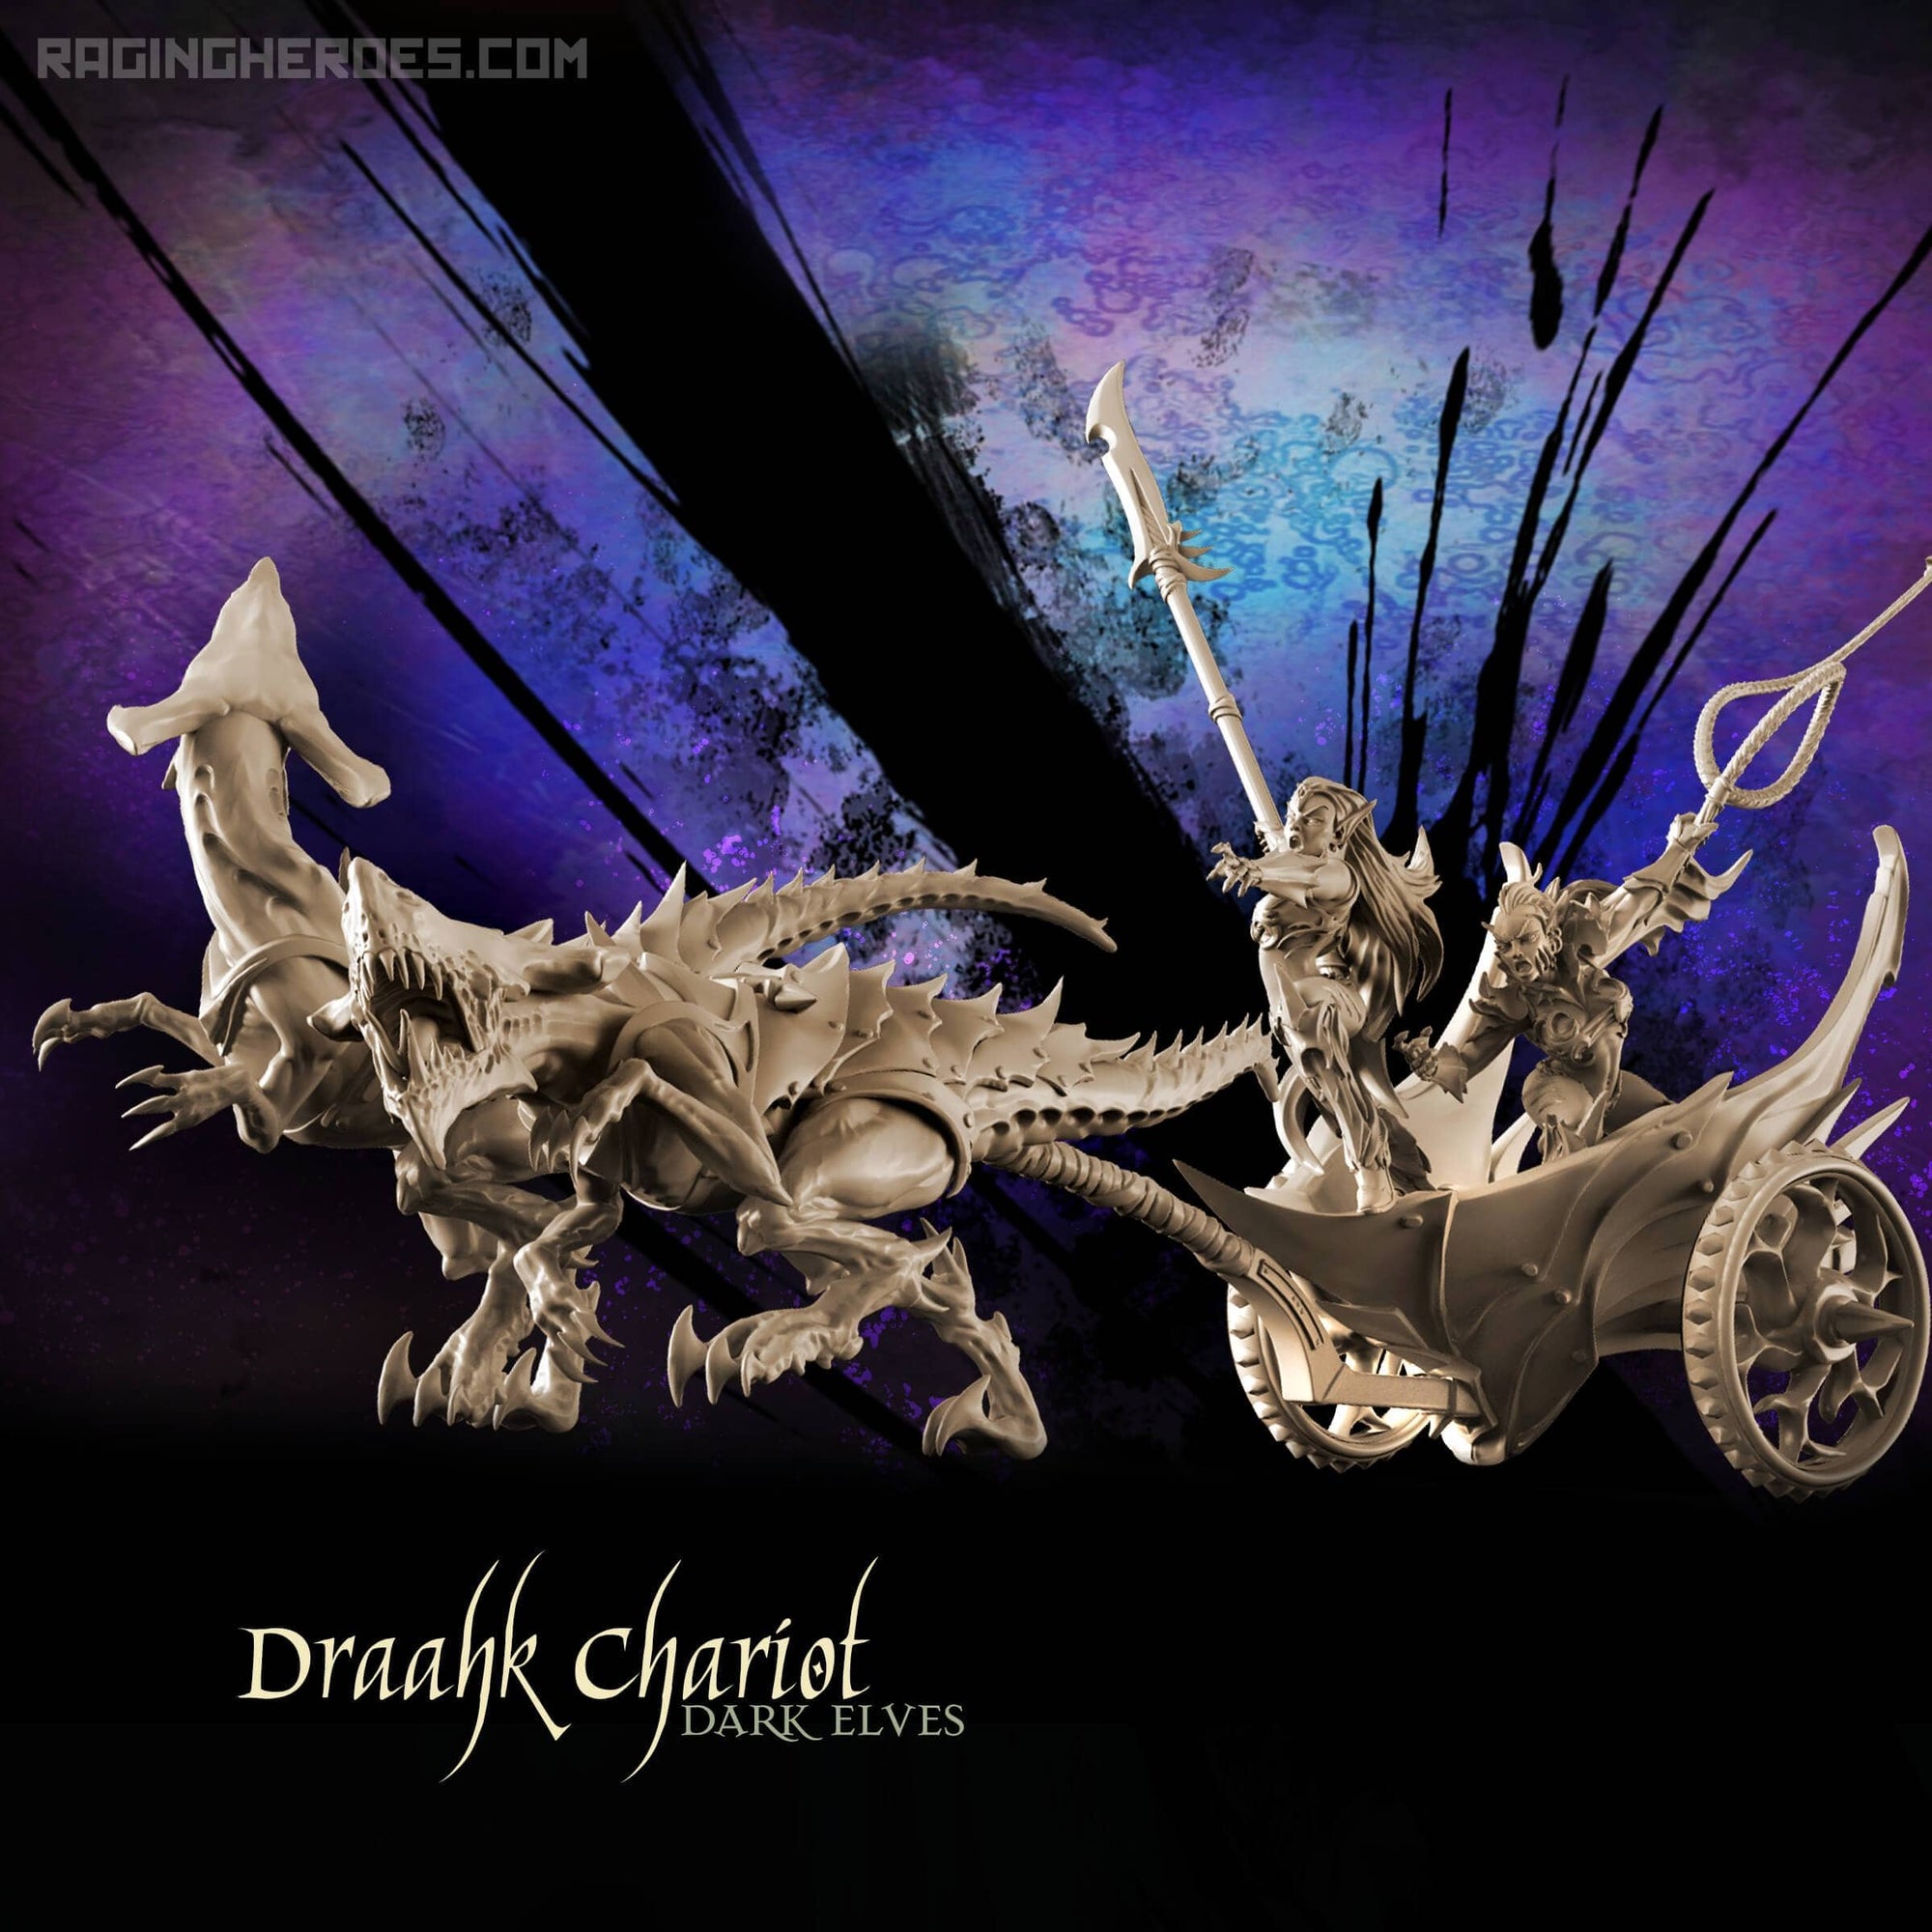 Draahk Chariot (de - f)